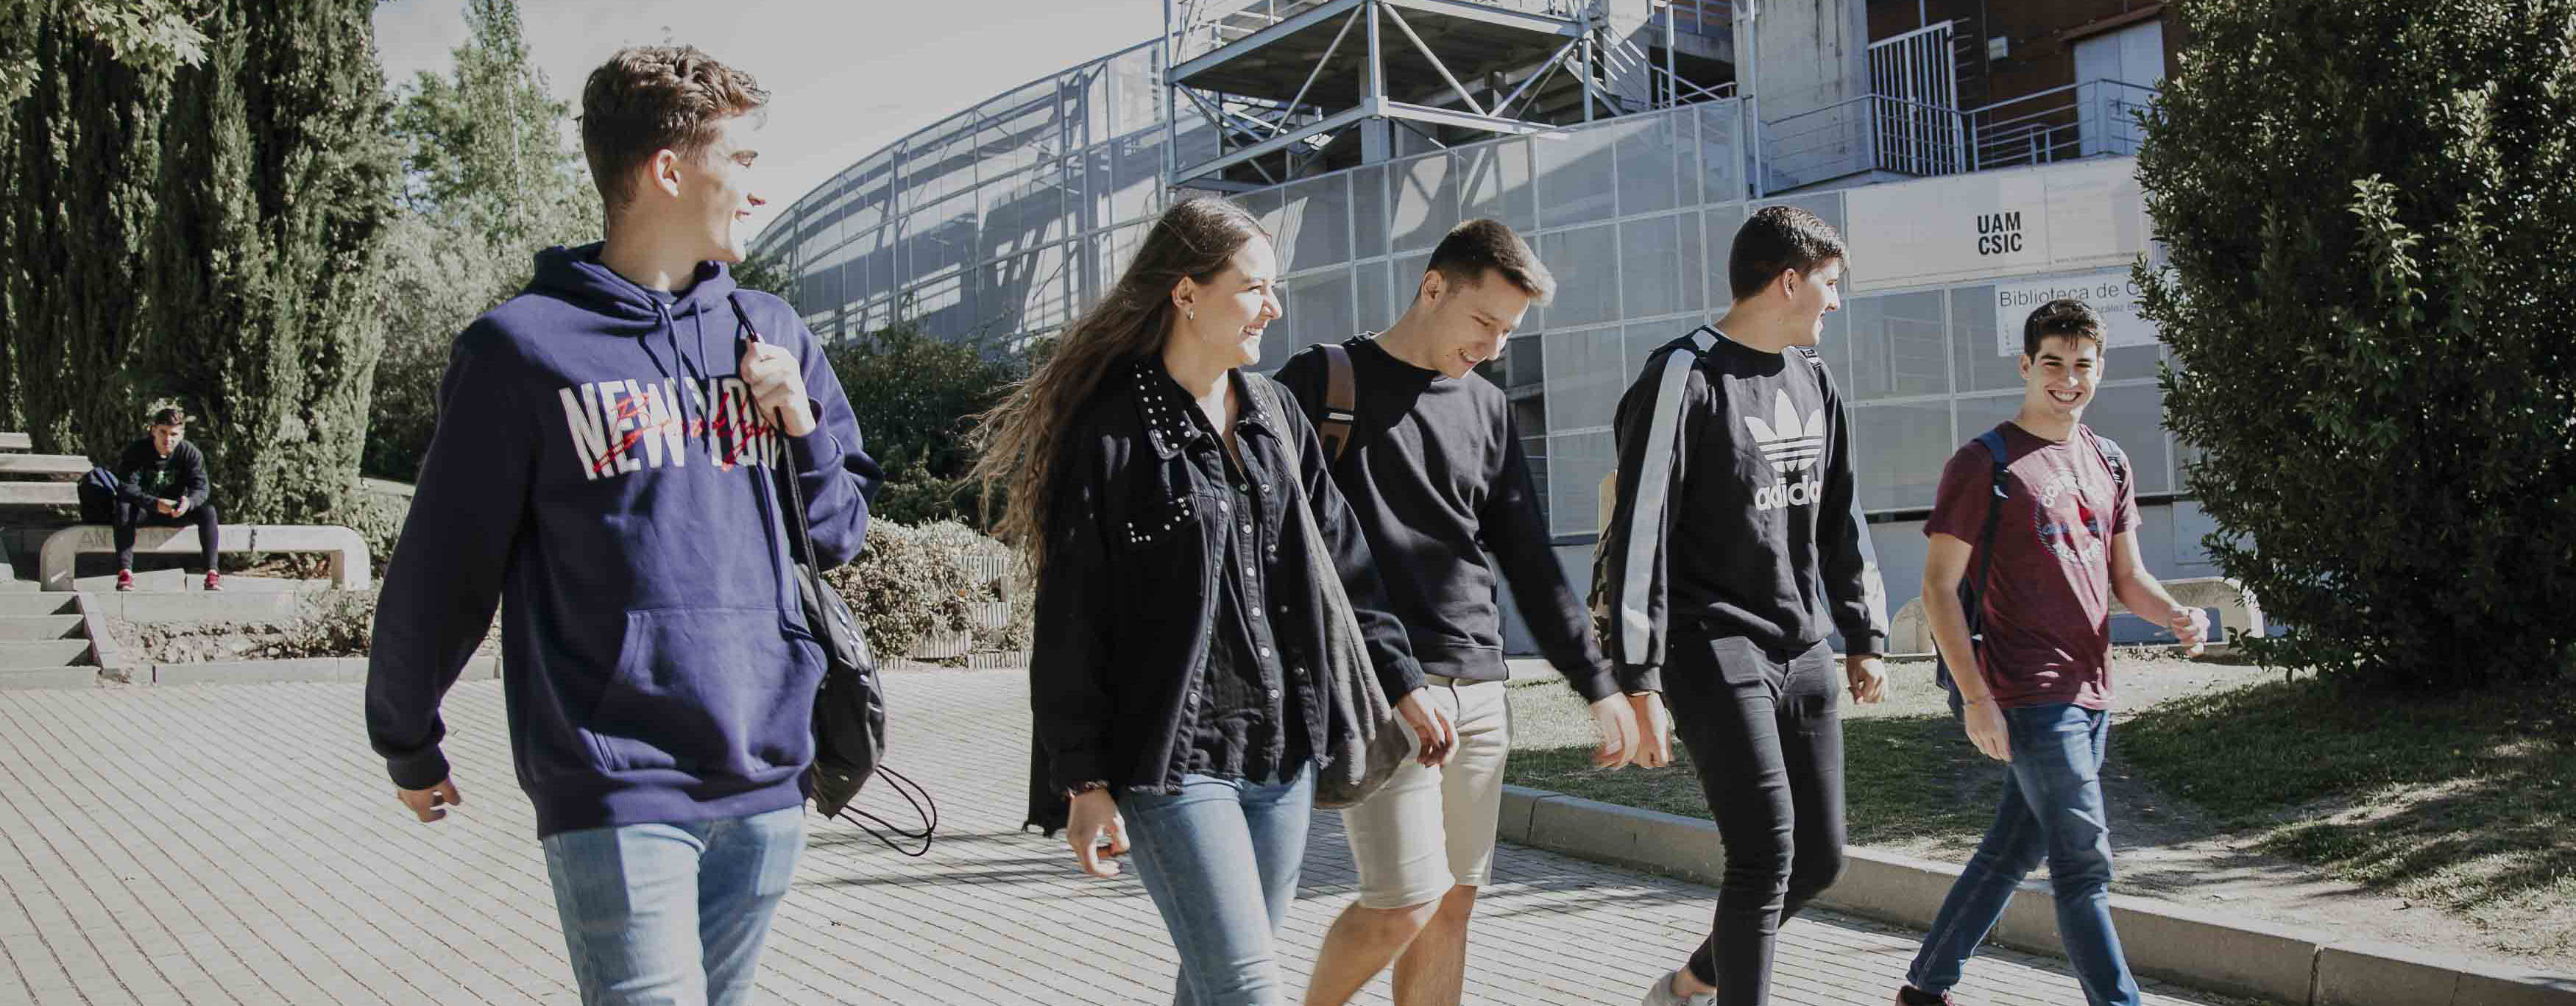 Panorámica de la Plaza Mayor con estudiantes caminando